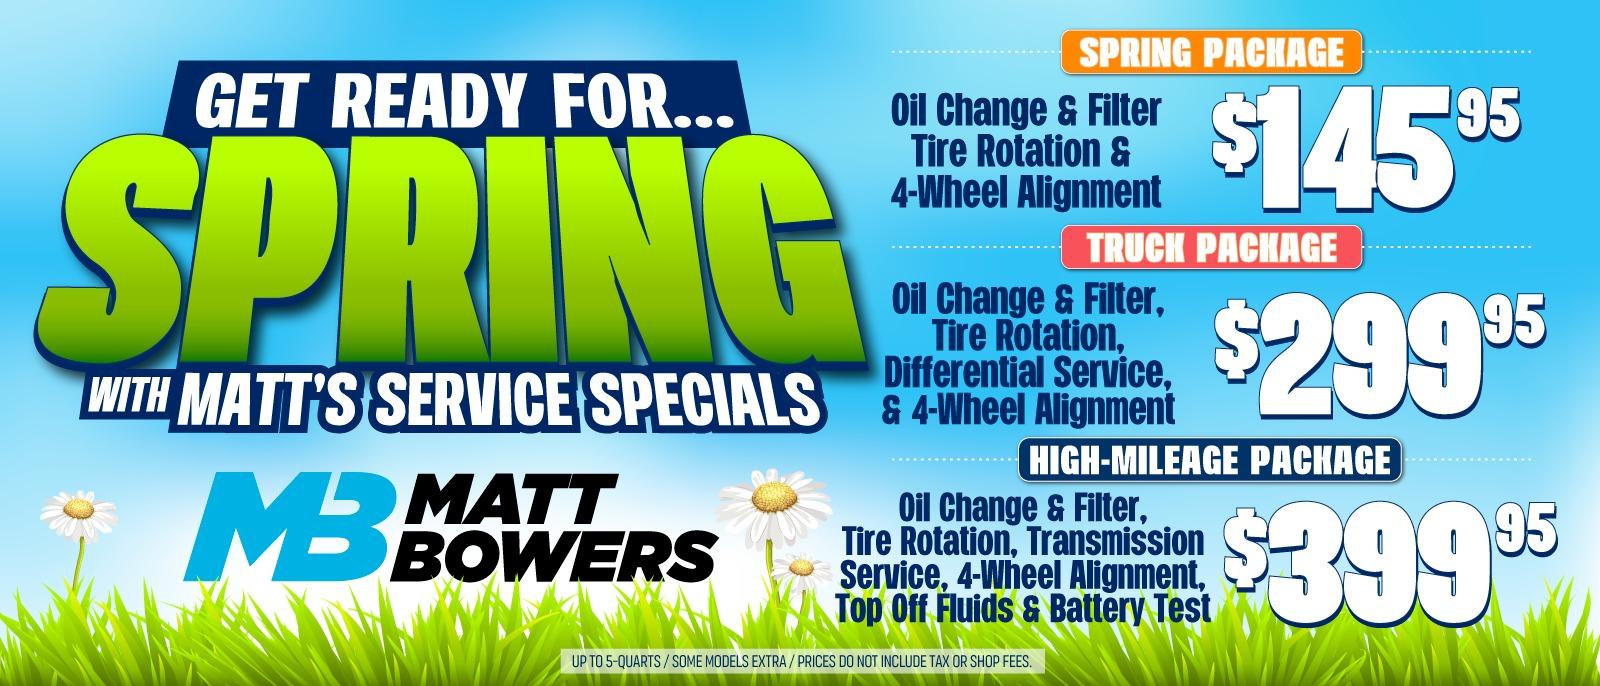 Matt Bowers Spring Service Specials